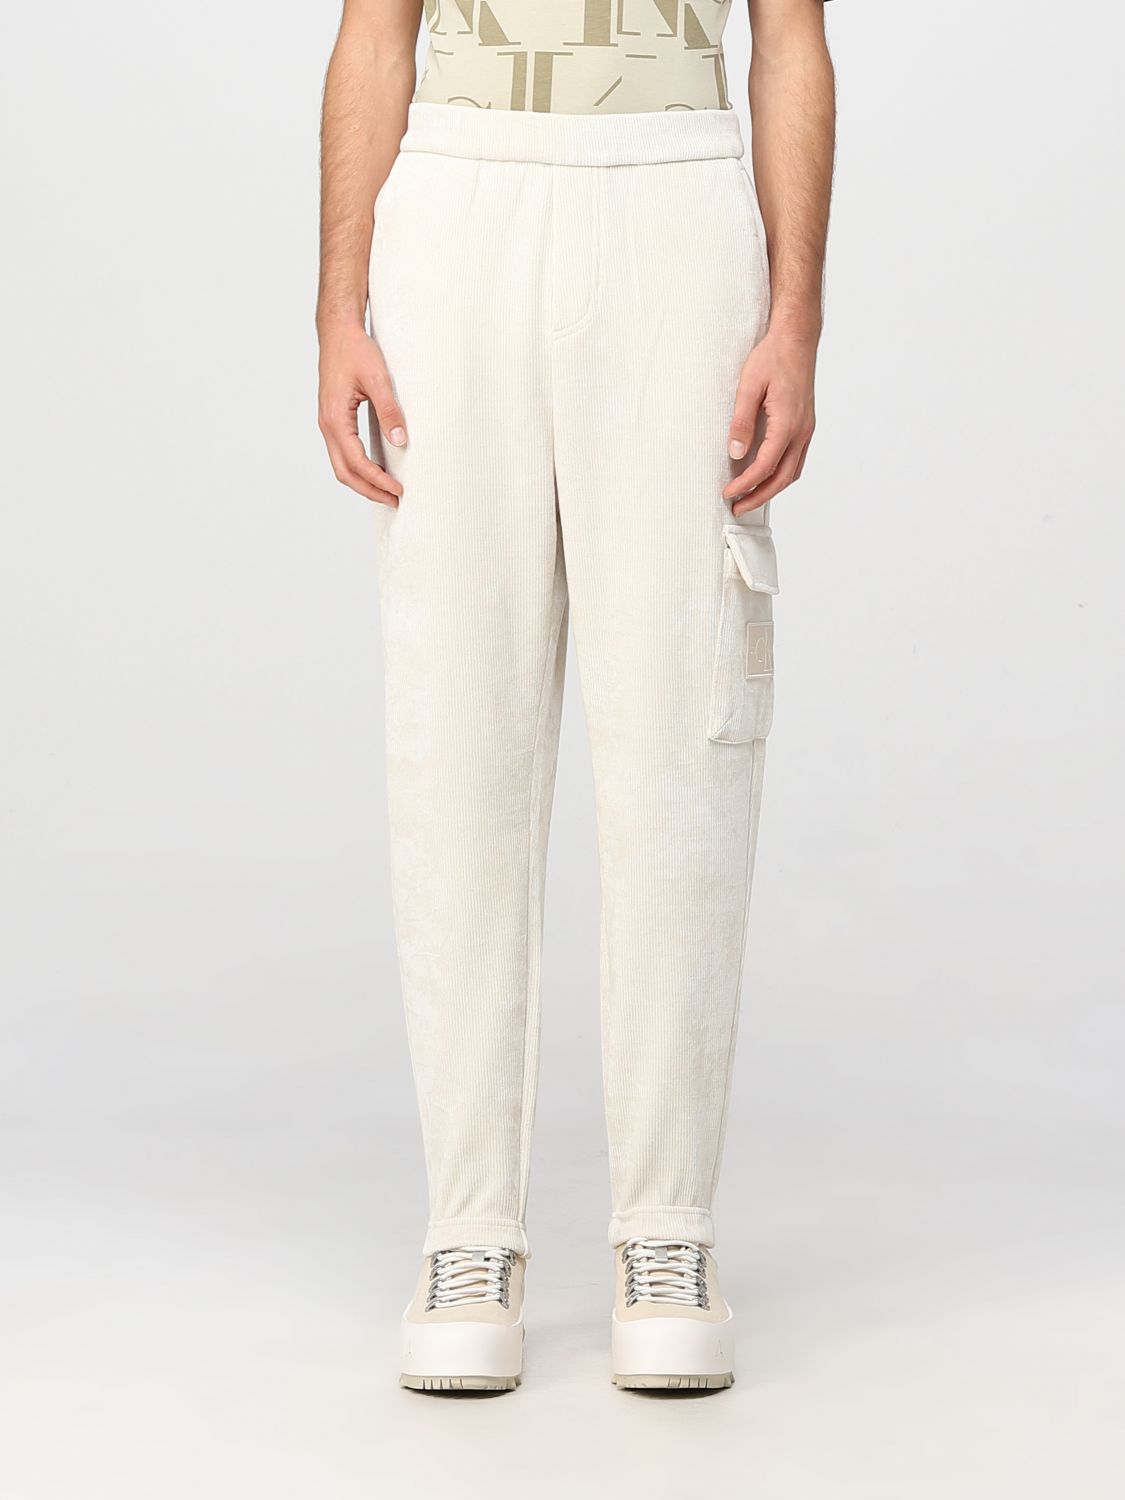 CALVIN KLEIN JEANS: Pantalón para | Calvin Klein Jeans J30J322049 línea en GIGLIO.COM